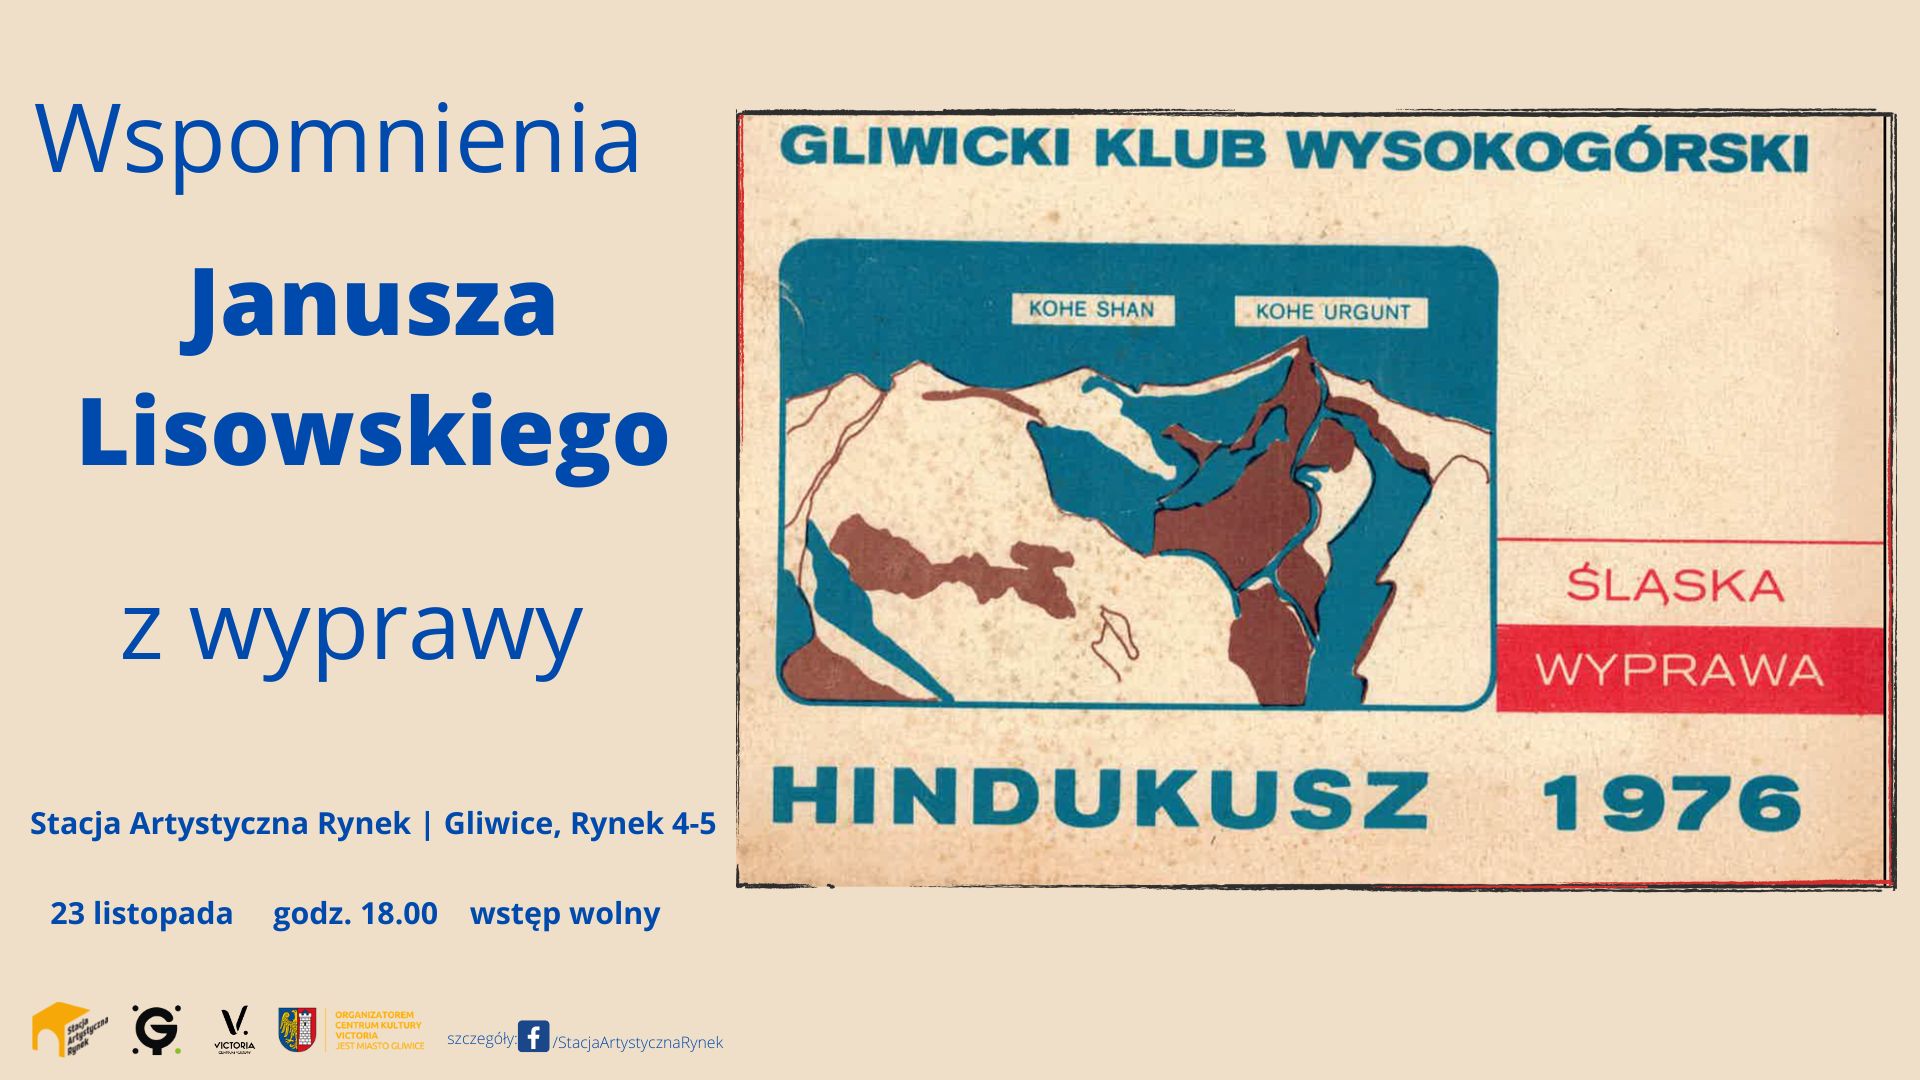 HINDUKUSZ 1976 - Wspomnienia Janusza Lisowskiego